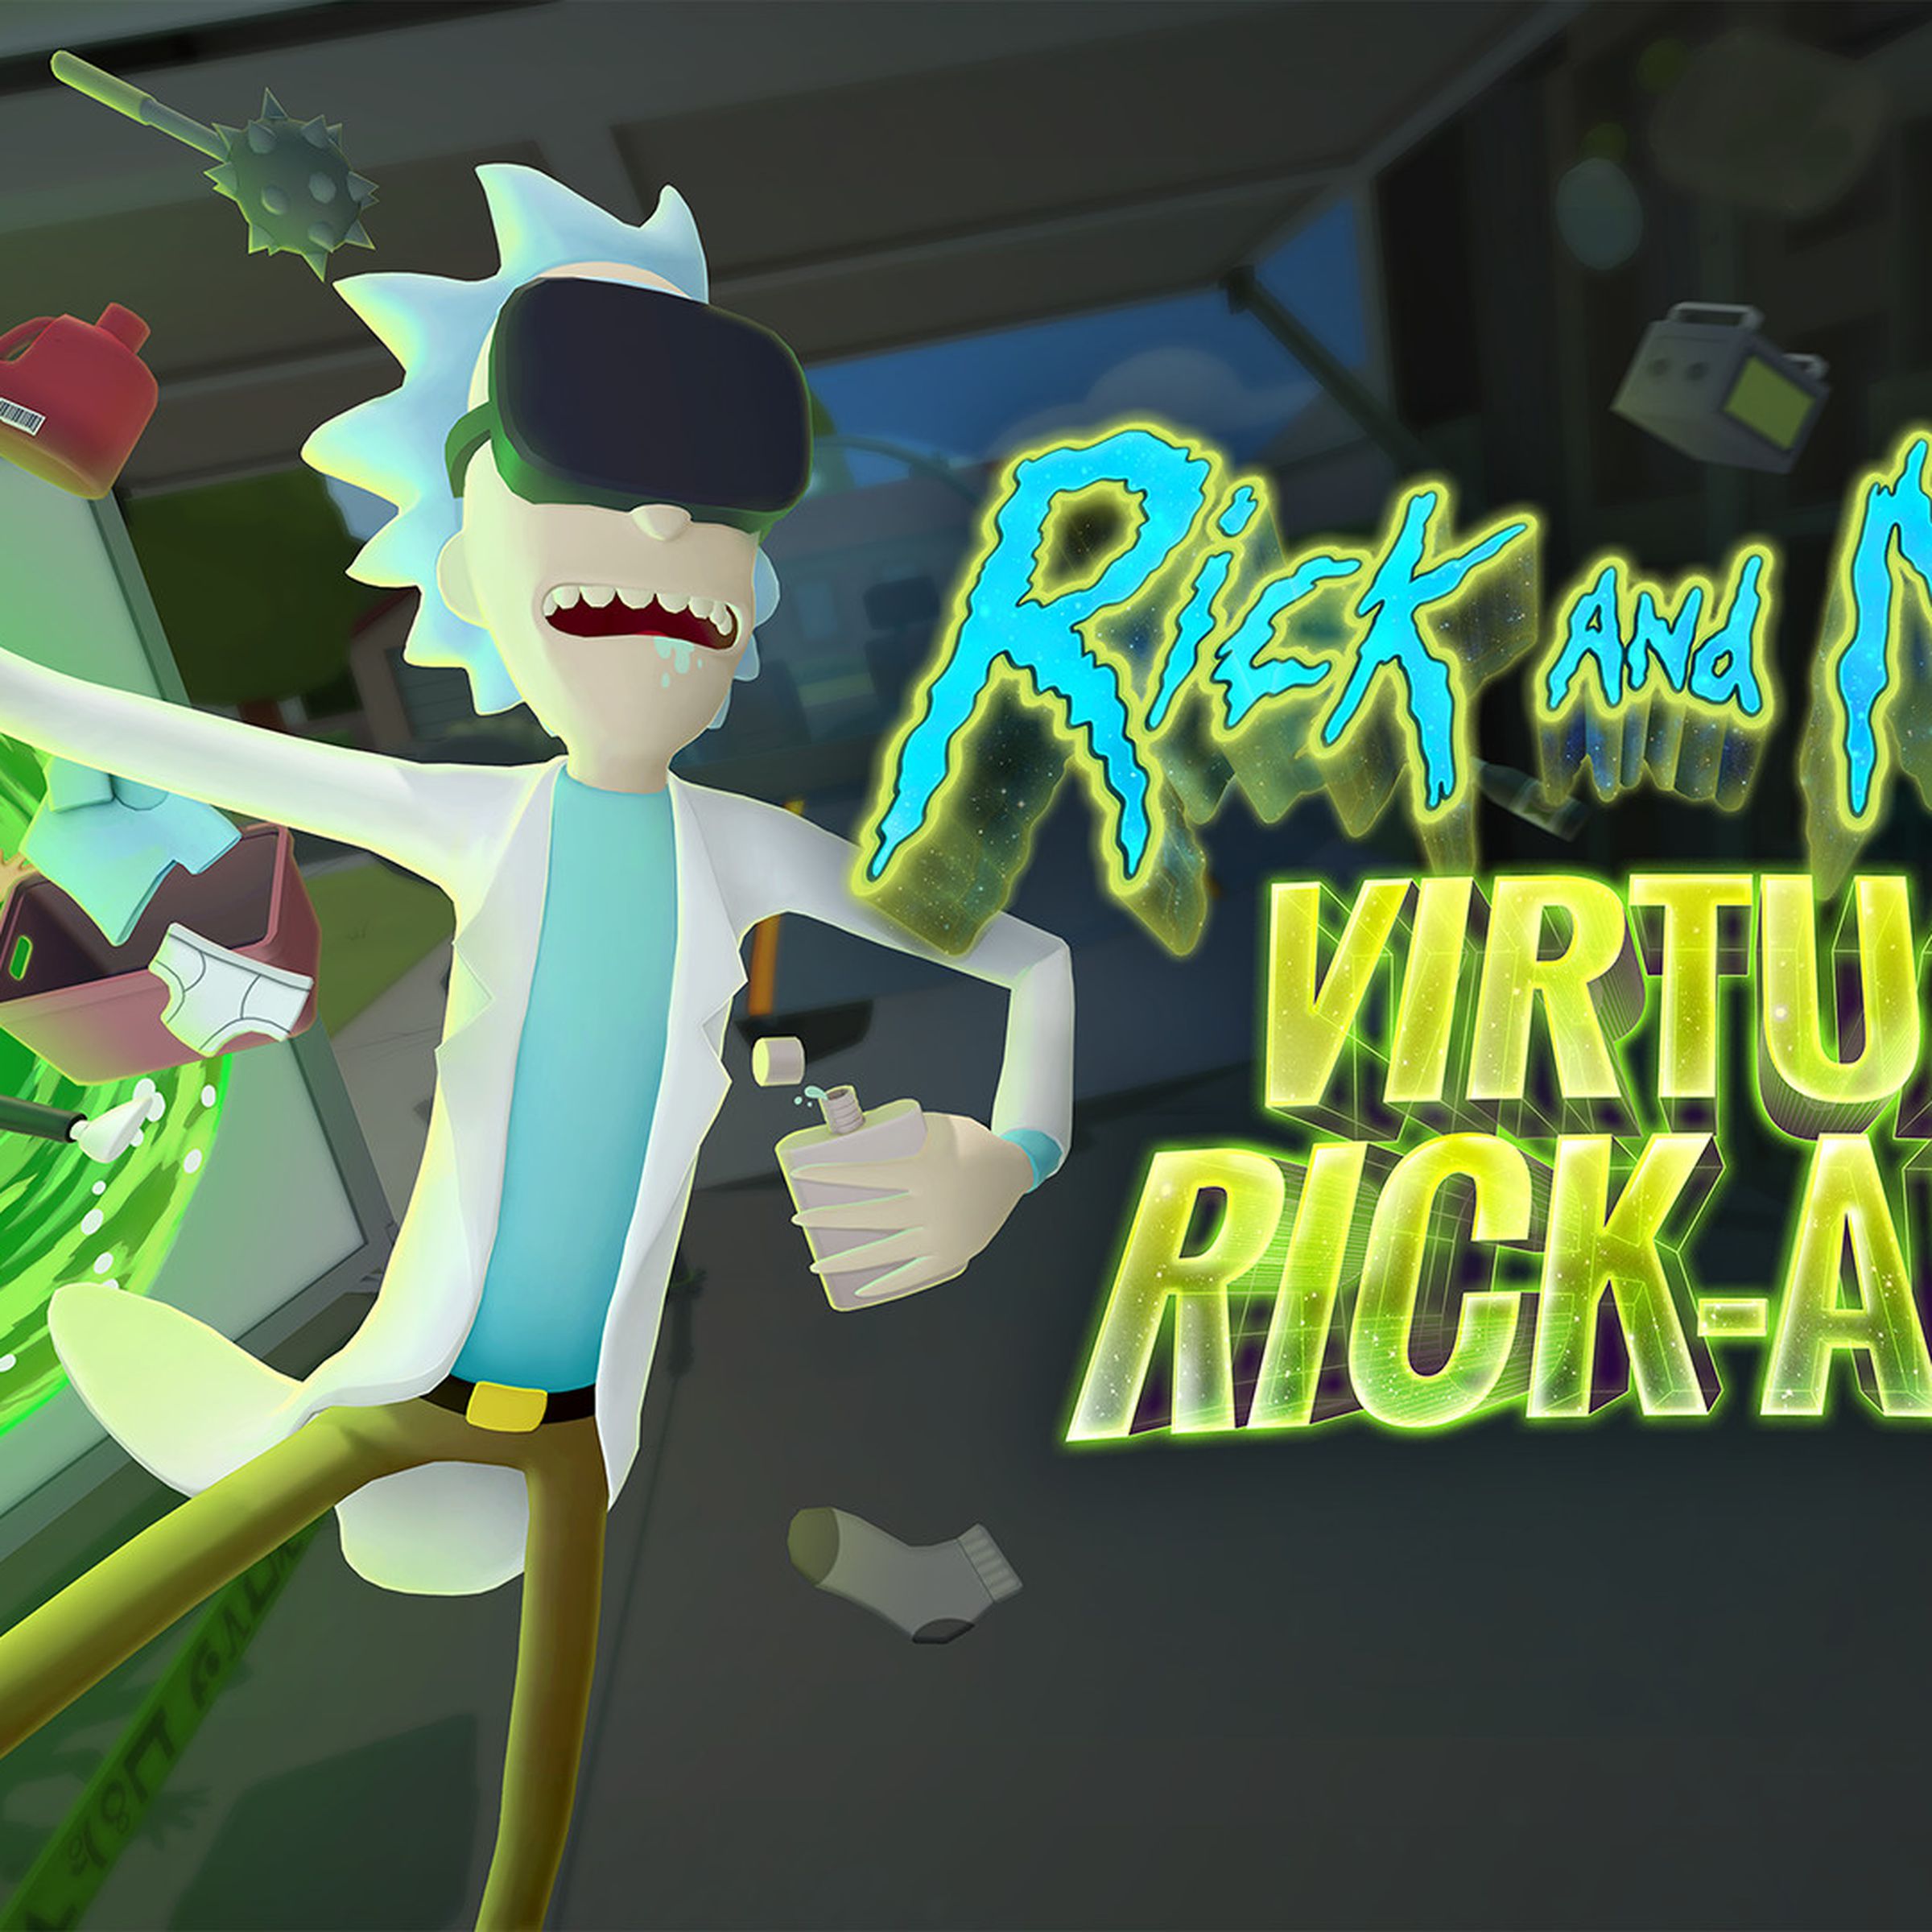 Screenshot from Rick and Morty: Virtual Rick-ality featuring Rick and Morty wearing virtual headsets